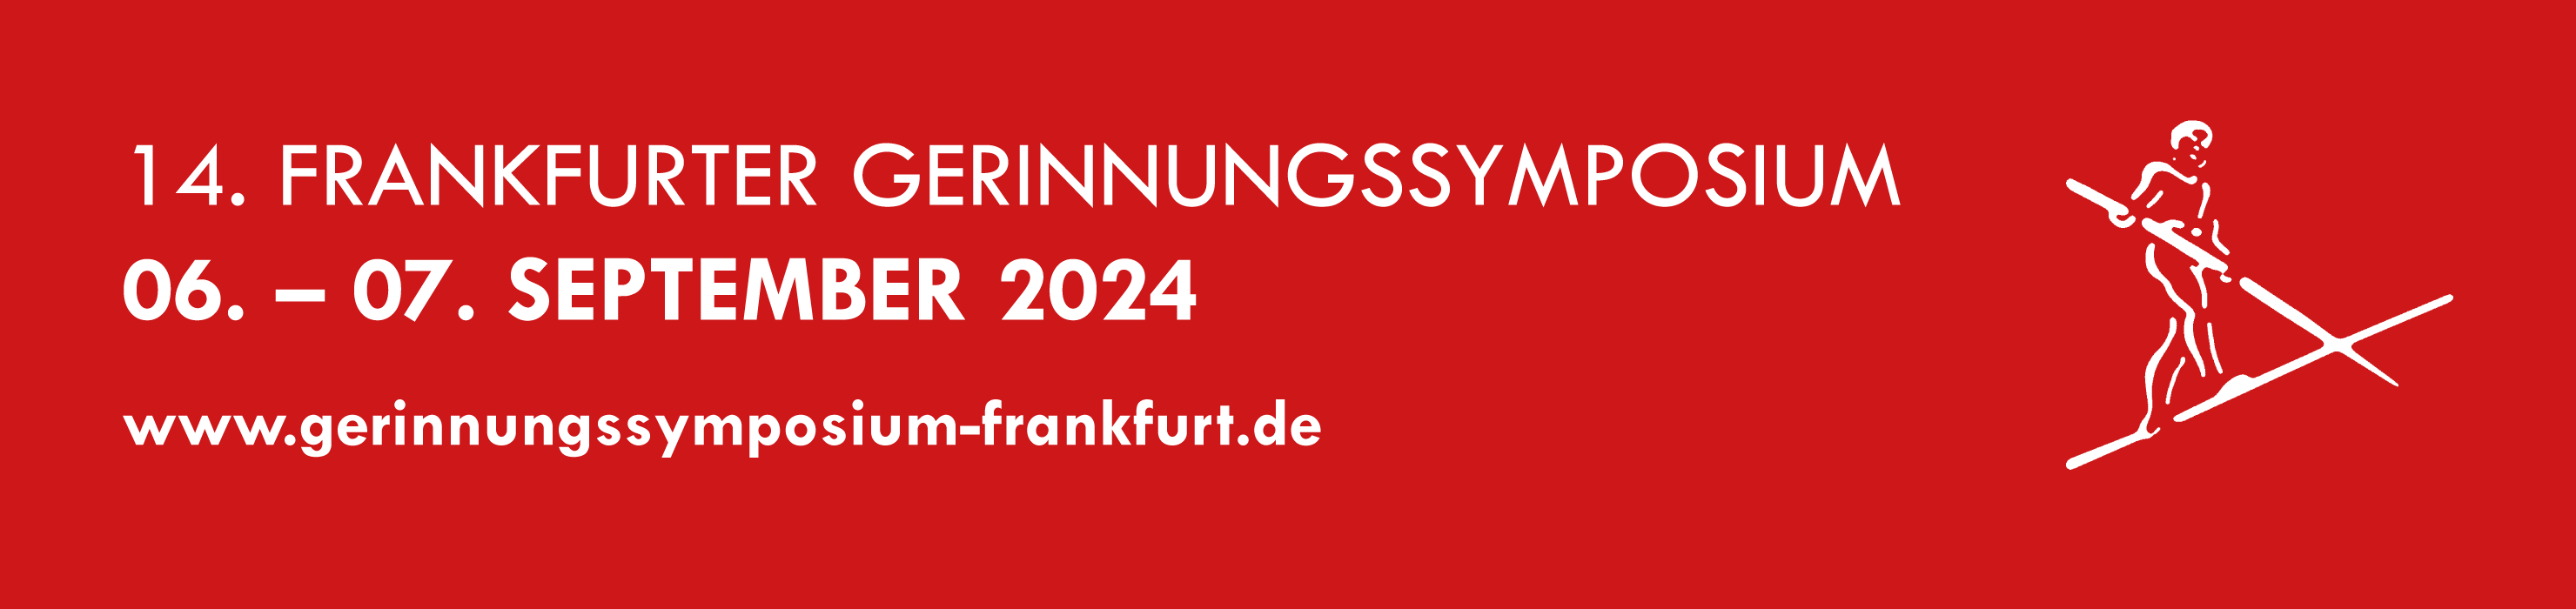 Frankfurter Gerinnungssymposium 2024